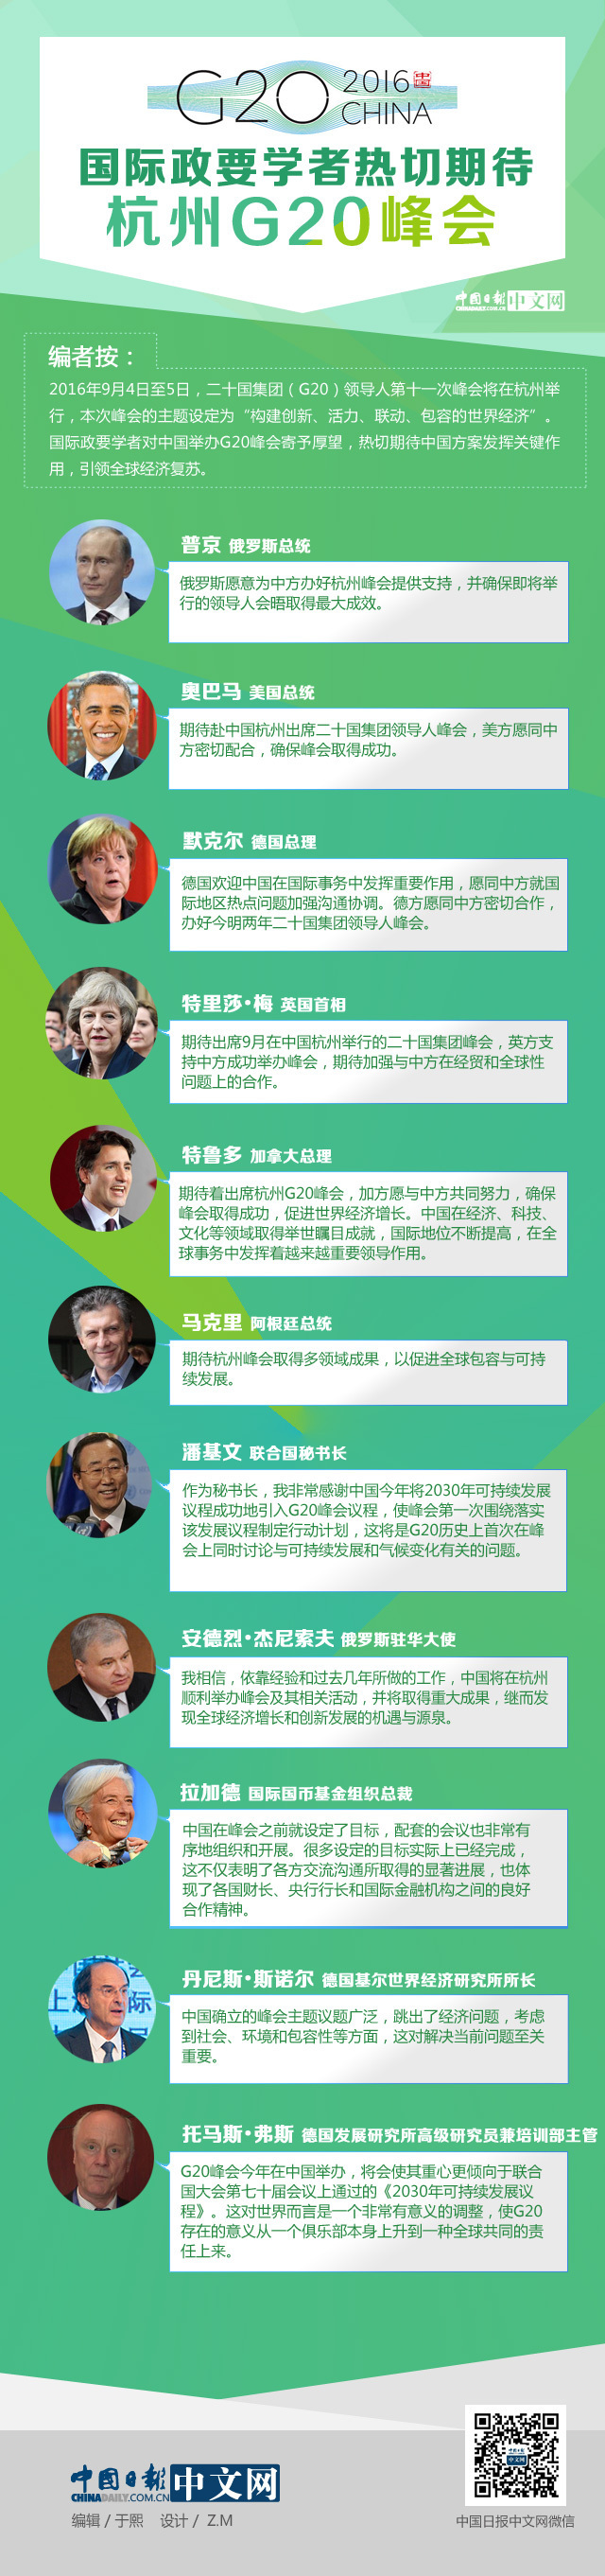 國際政要學者熱切期待G20杭州峰會